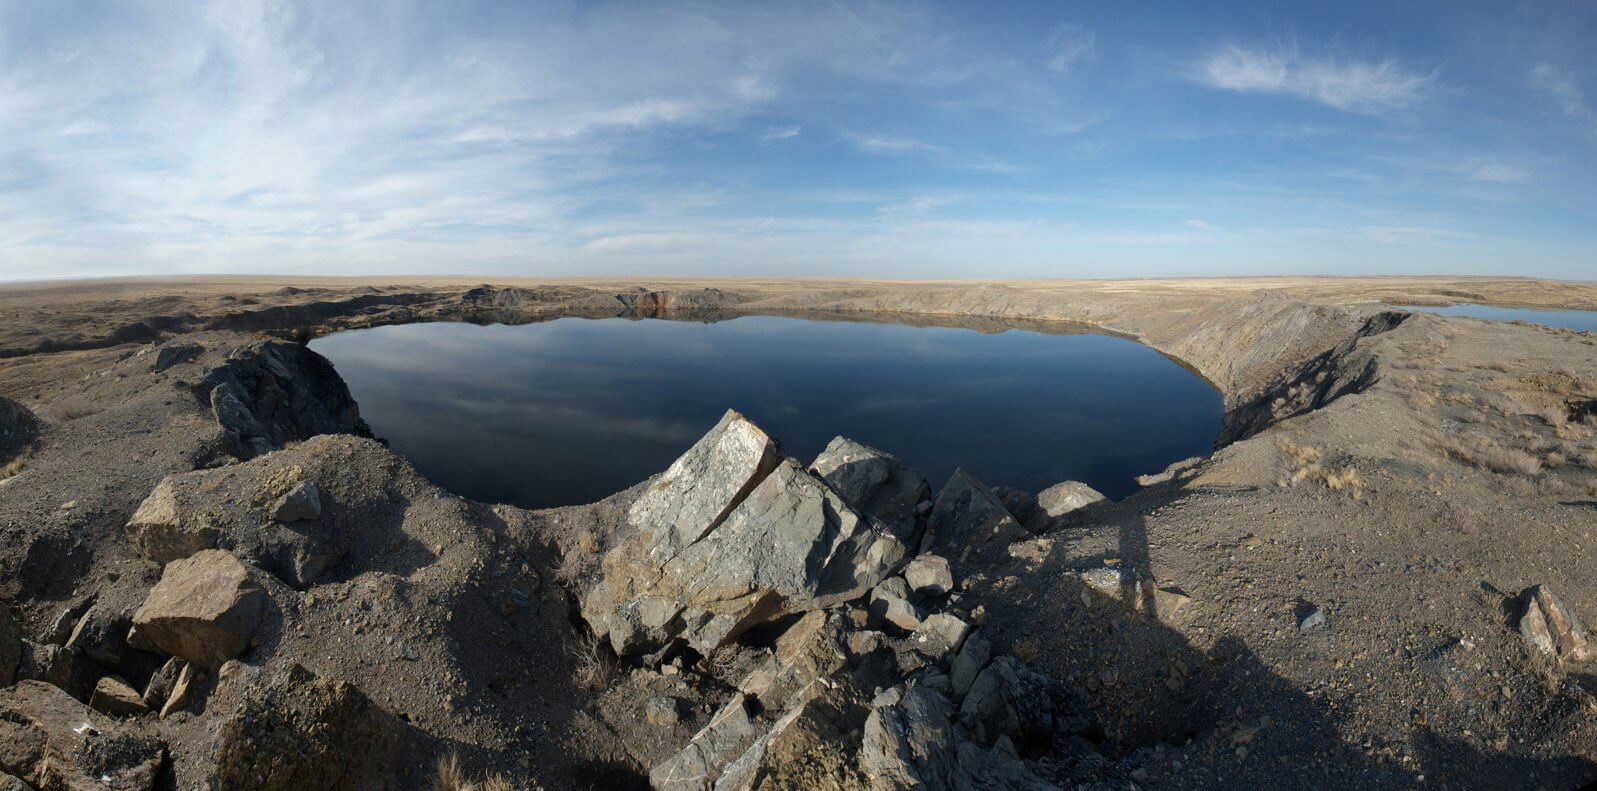 Atomique lac Chagan: несбывшаяся le rêve de l'URSS